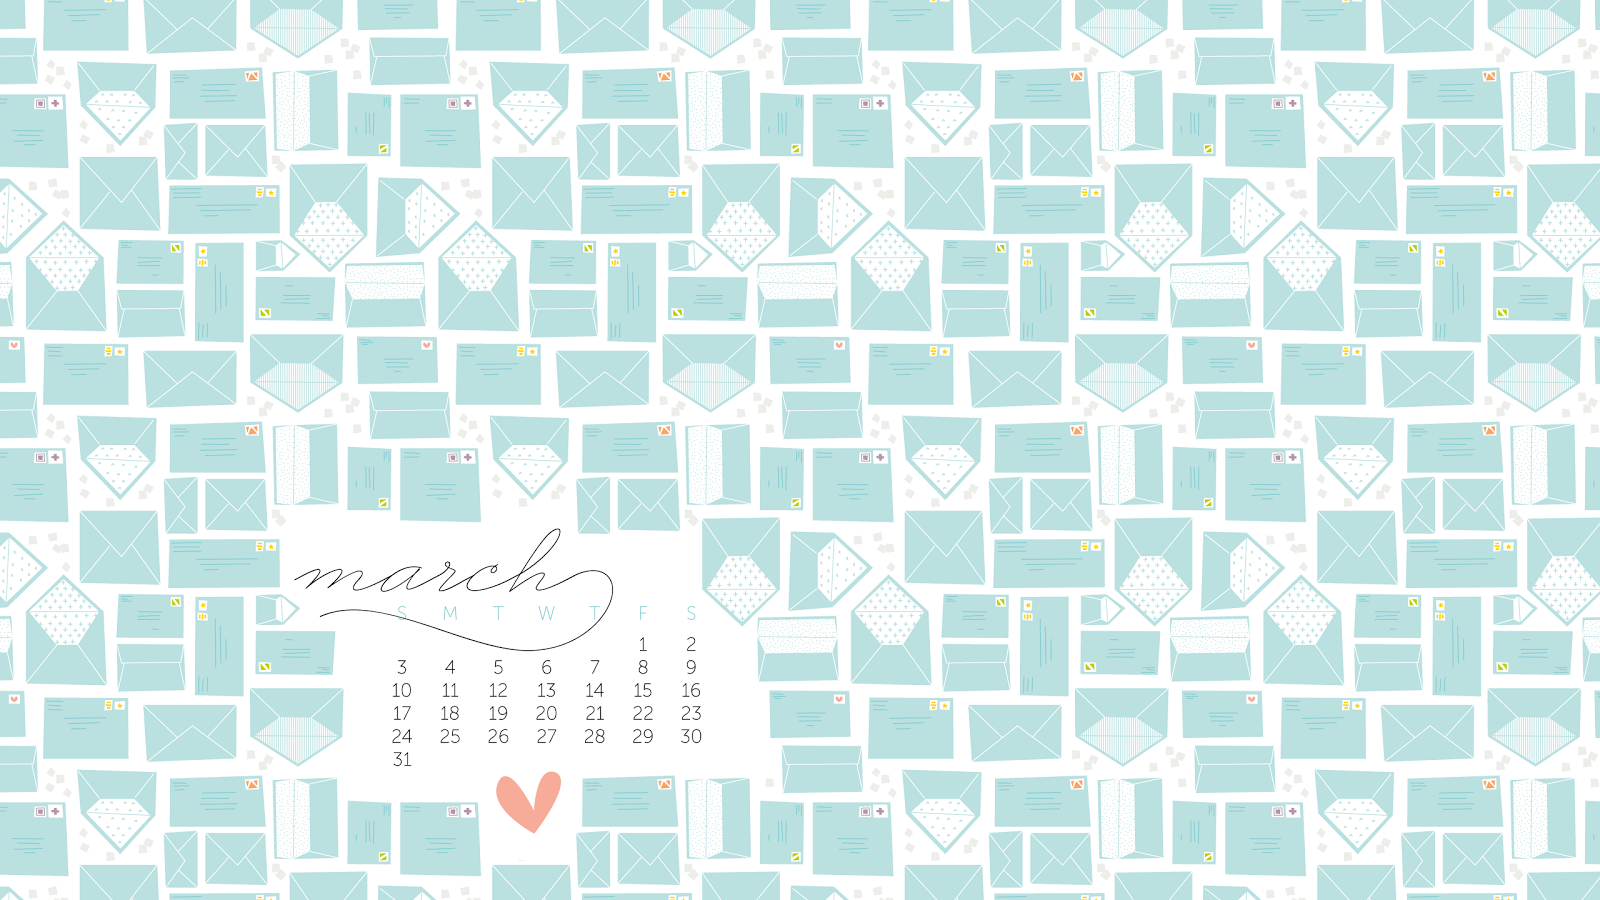 March Desktop Calendar